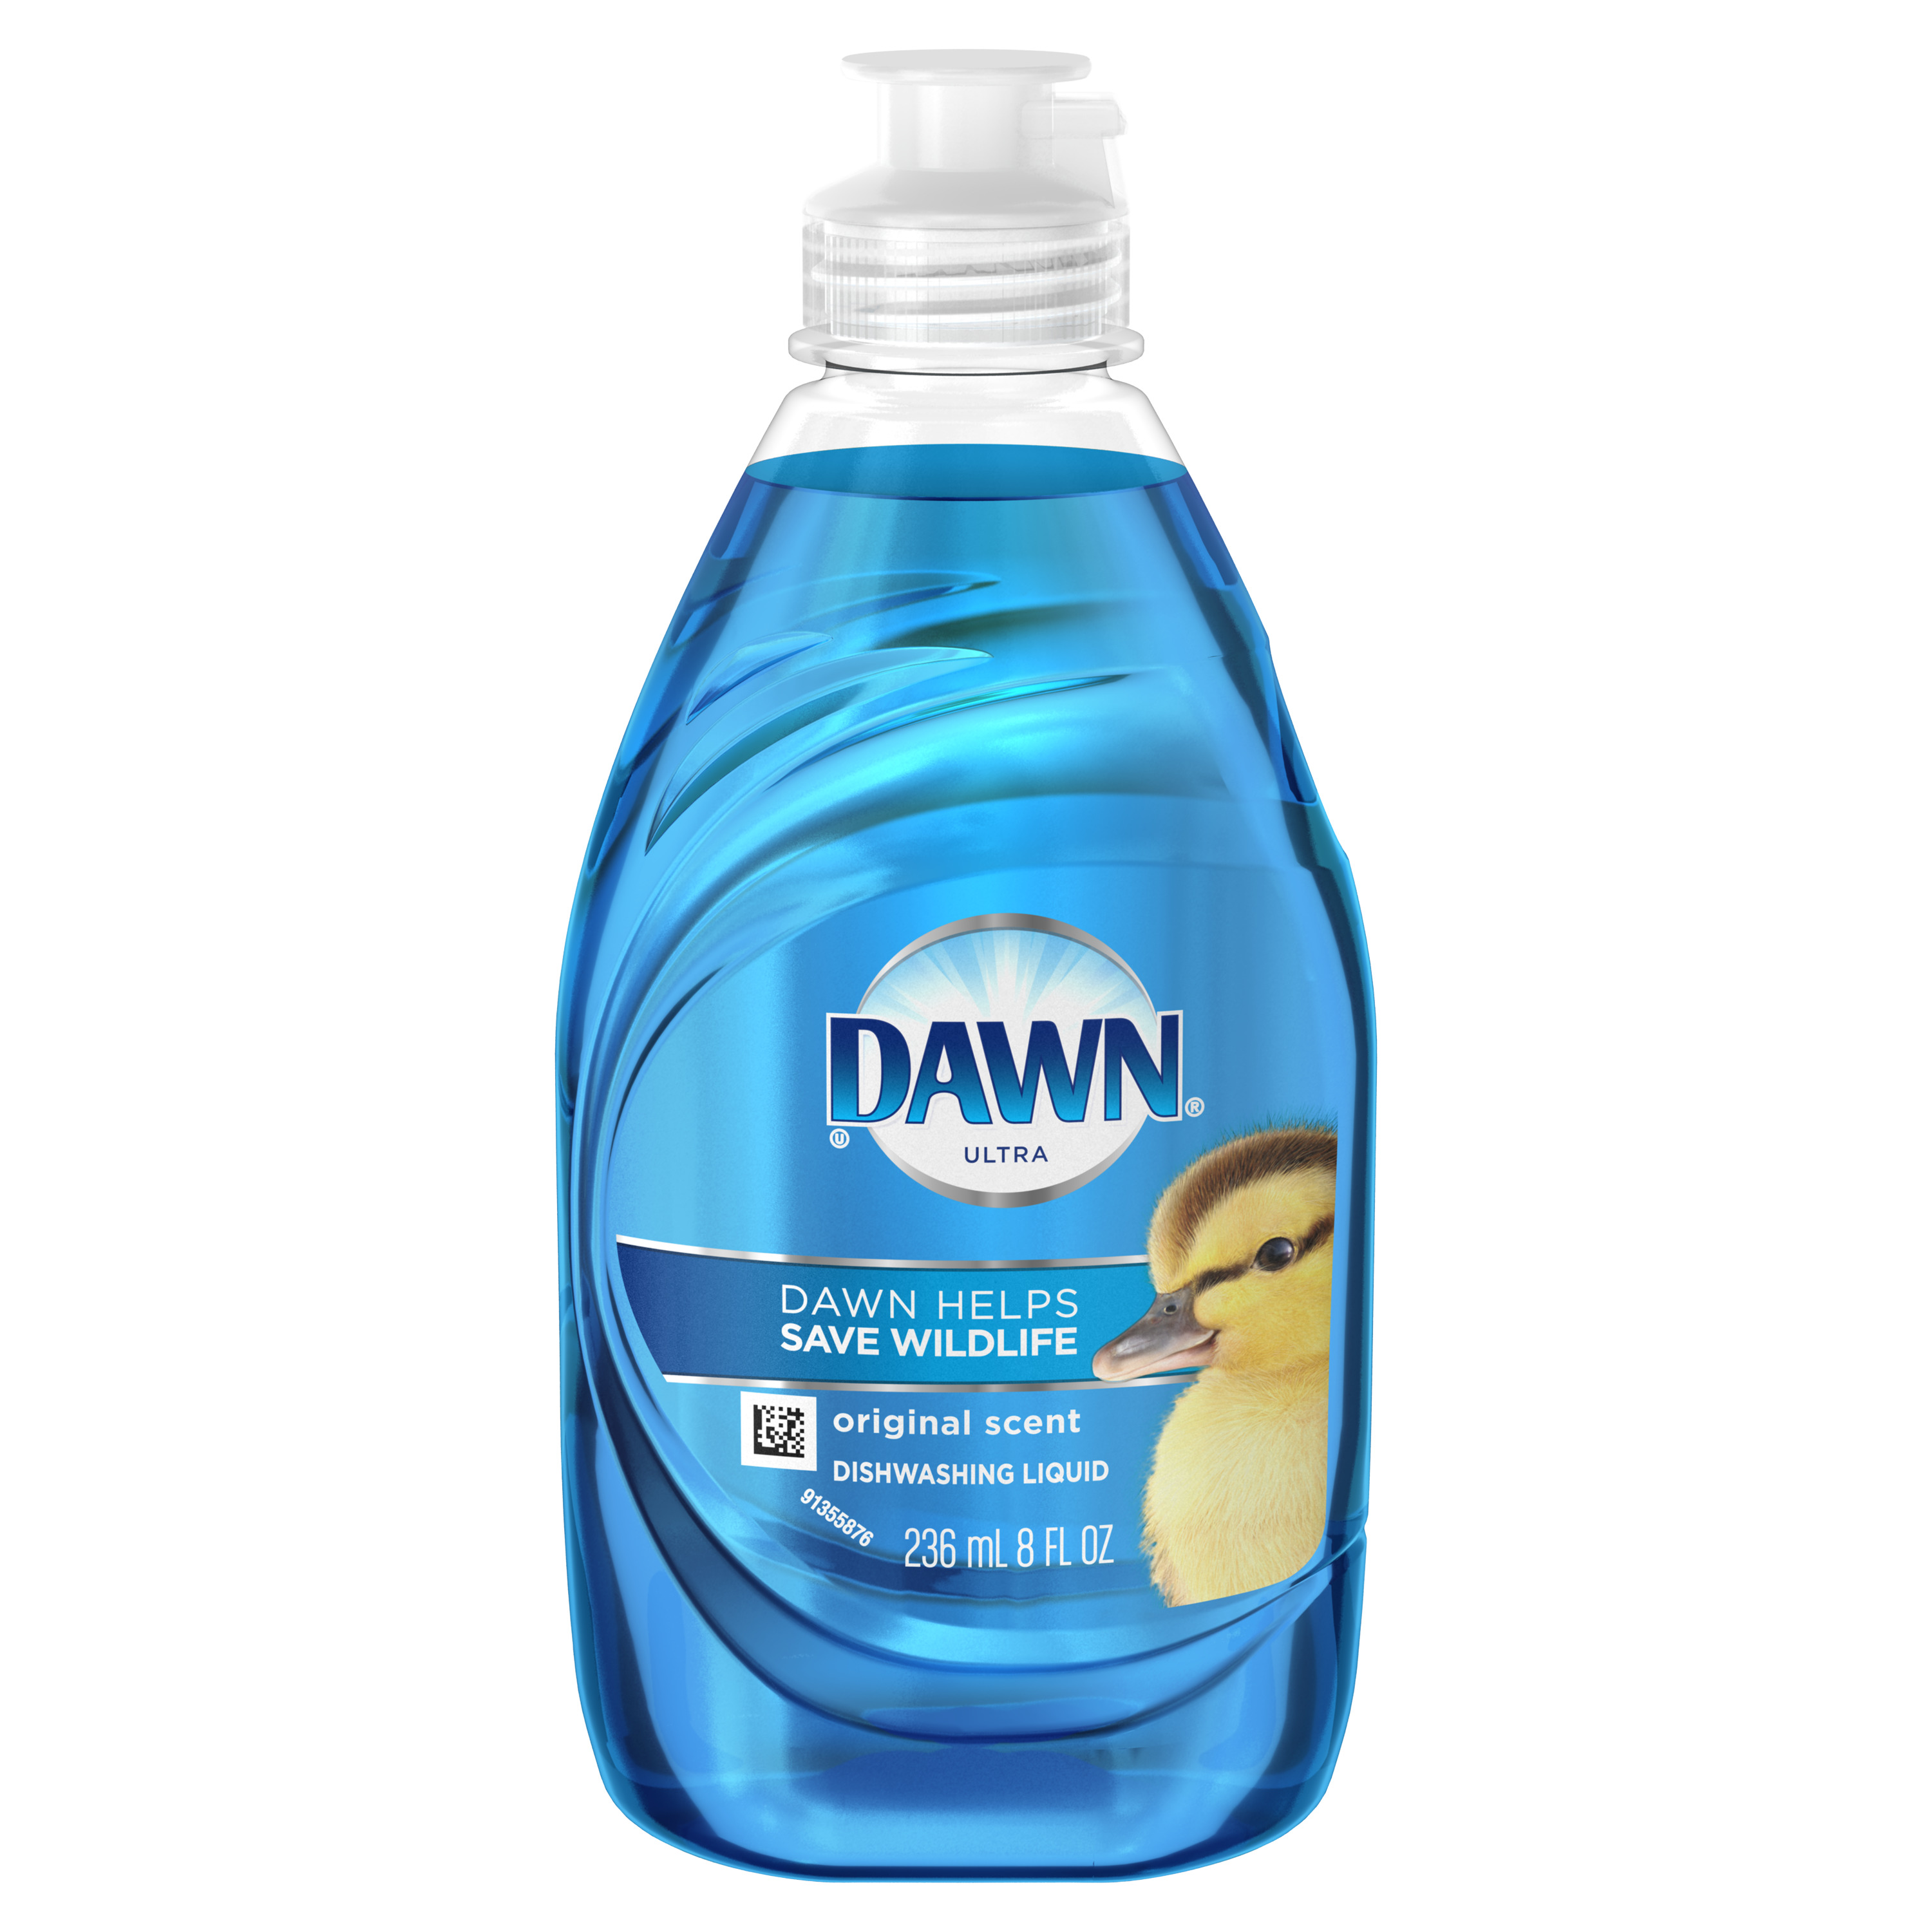 Dawn Ultra Dishwashing Liquid Dish Soap, Original, 8 fl oz - image 1 of 6